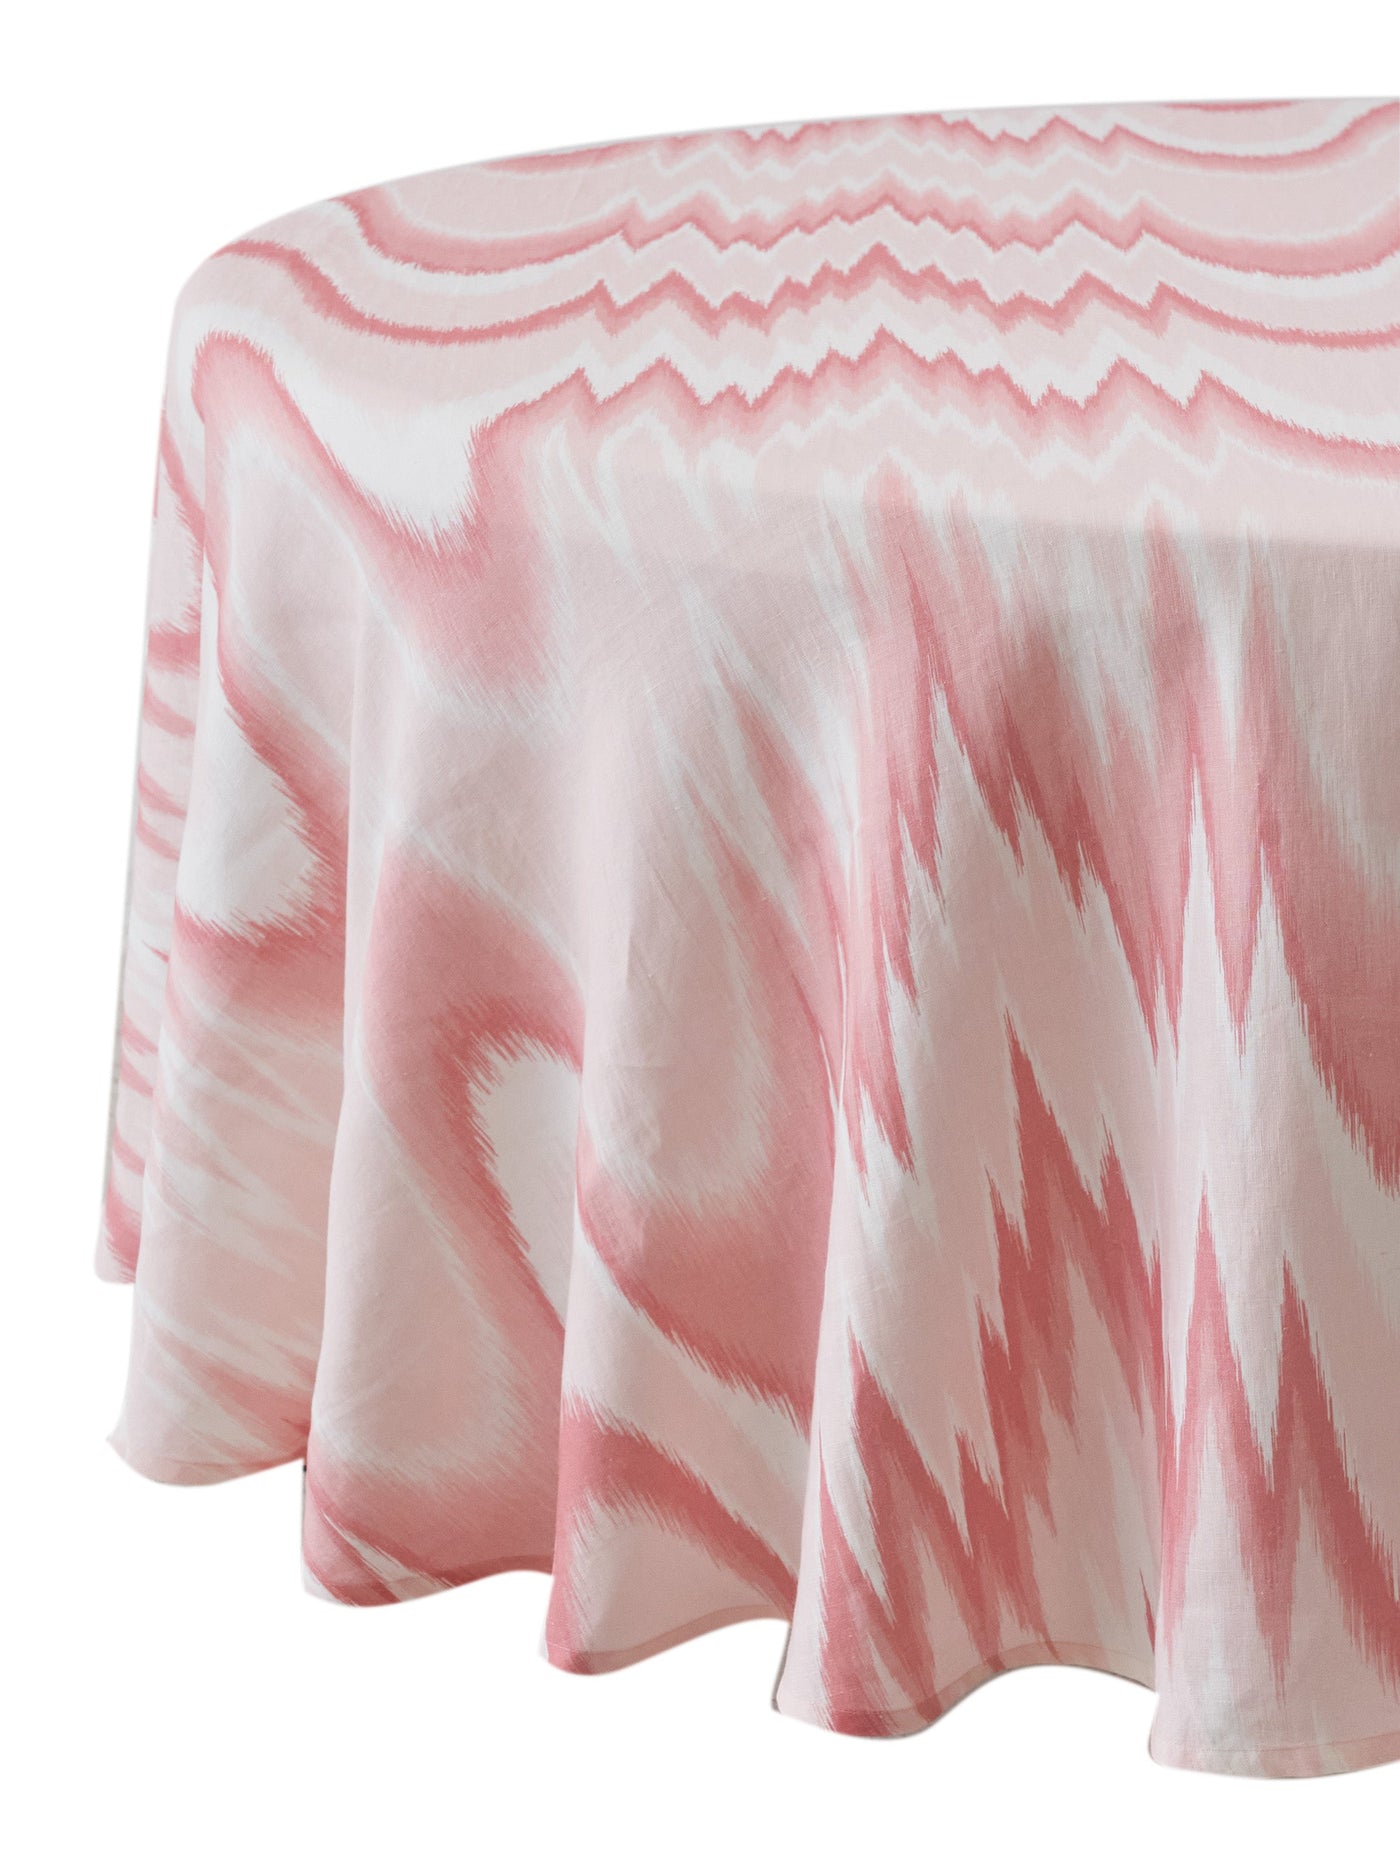 Aurora Round Tablecloth in Pink